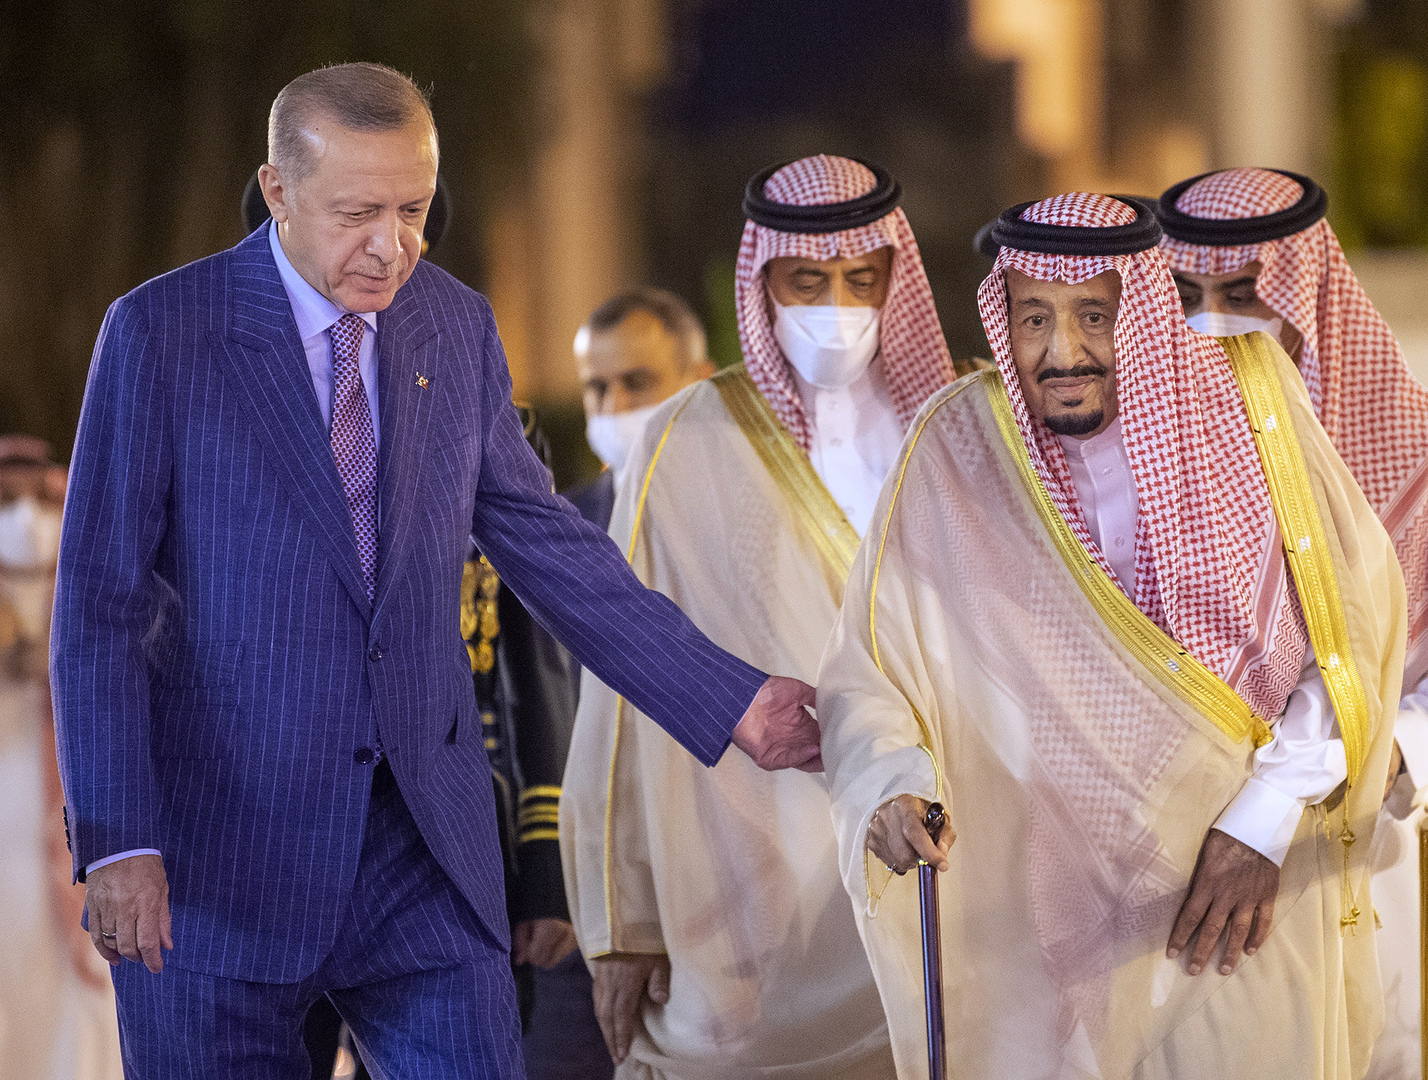 السعودية.. الملك سلمان يترأس اجتماعا لمجلس الوزراء ويصدر قرارات بشأن مصر وتركيا (فيديو)